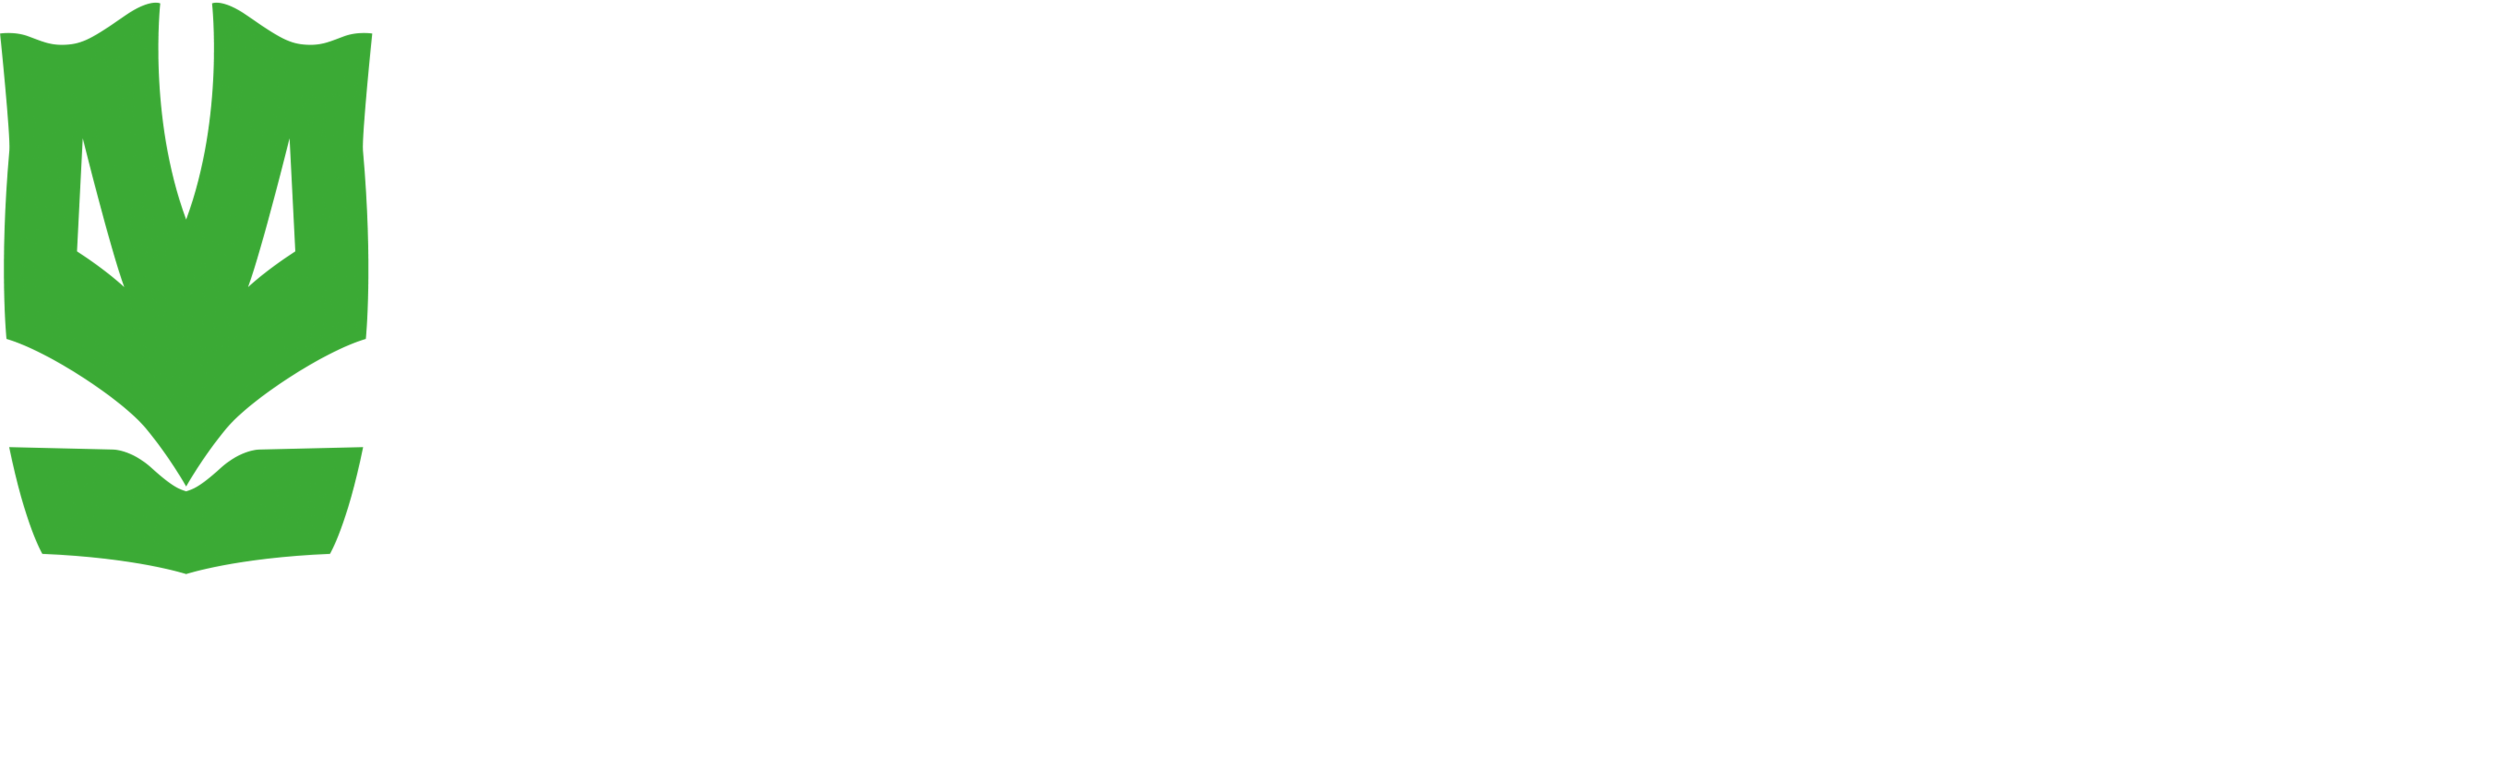 Krav Maga Defence Institute | Sydney&#39;s #1 Self-Defence Gym